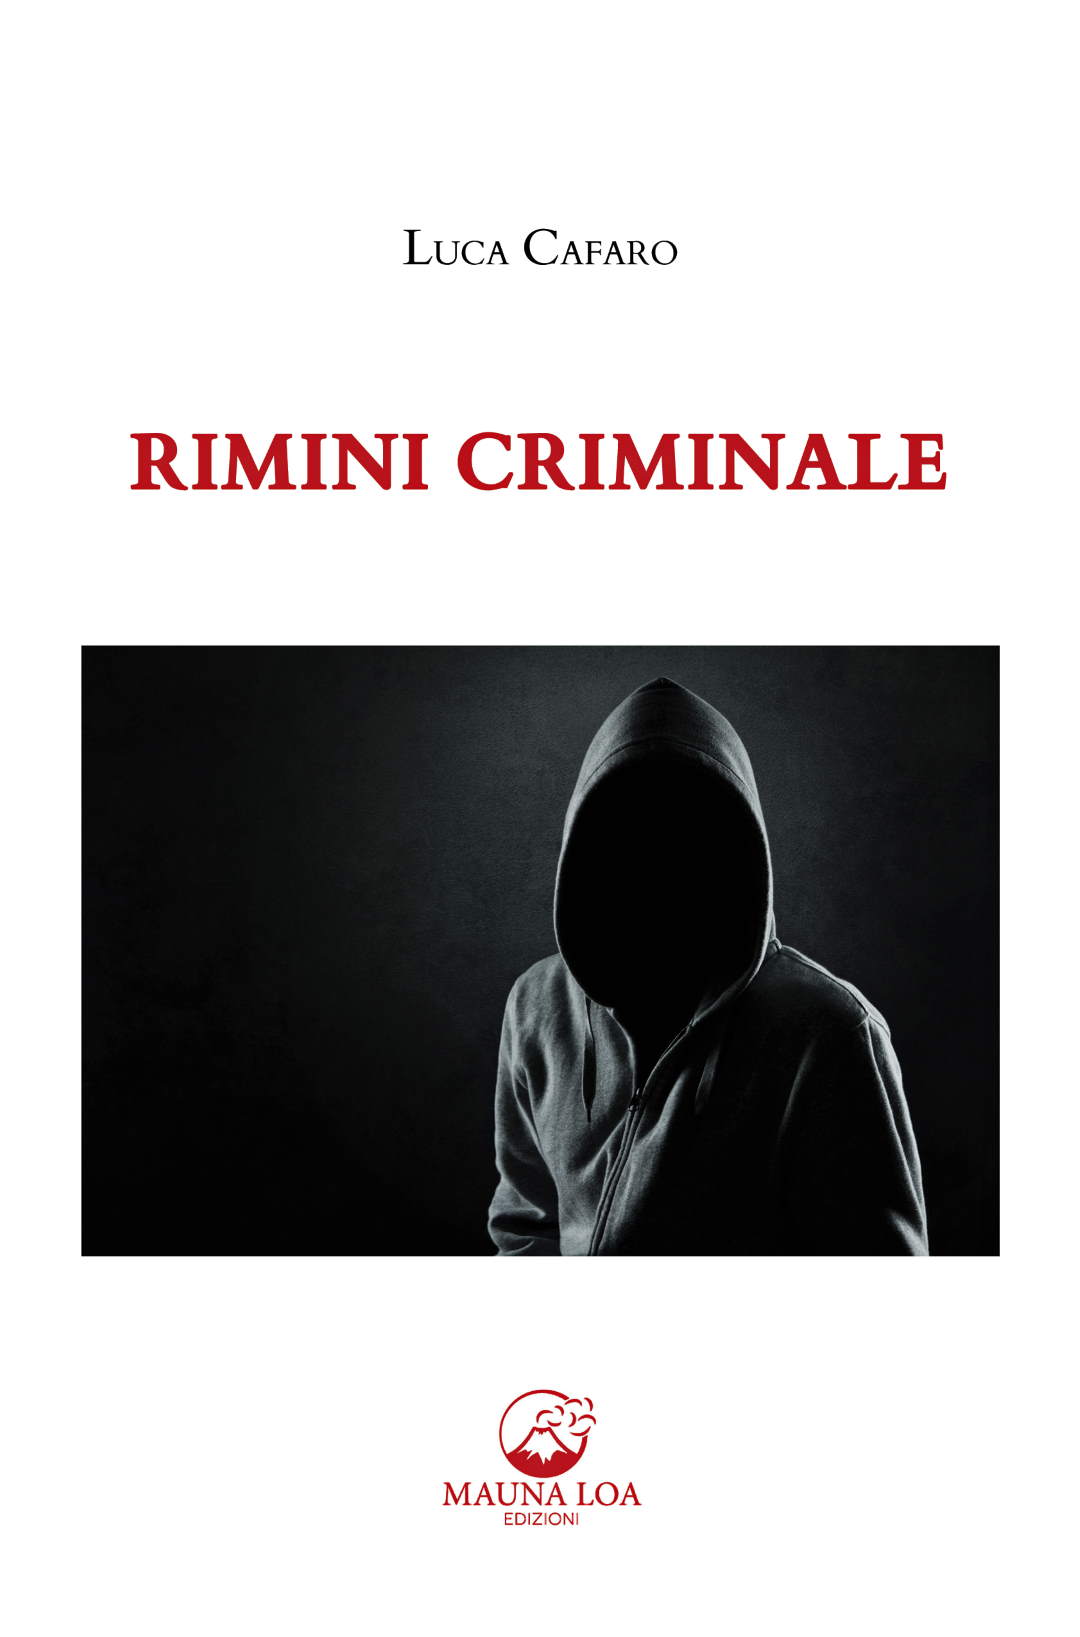 Luca Cafaro, “Rimini Criminale”